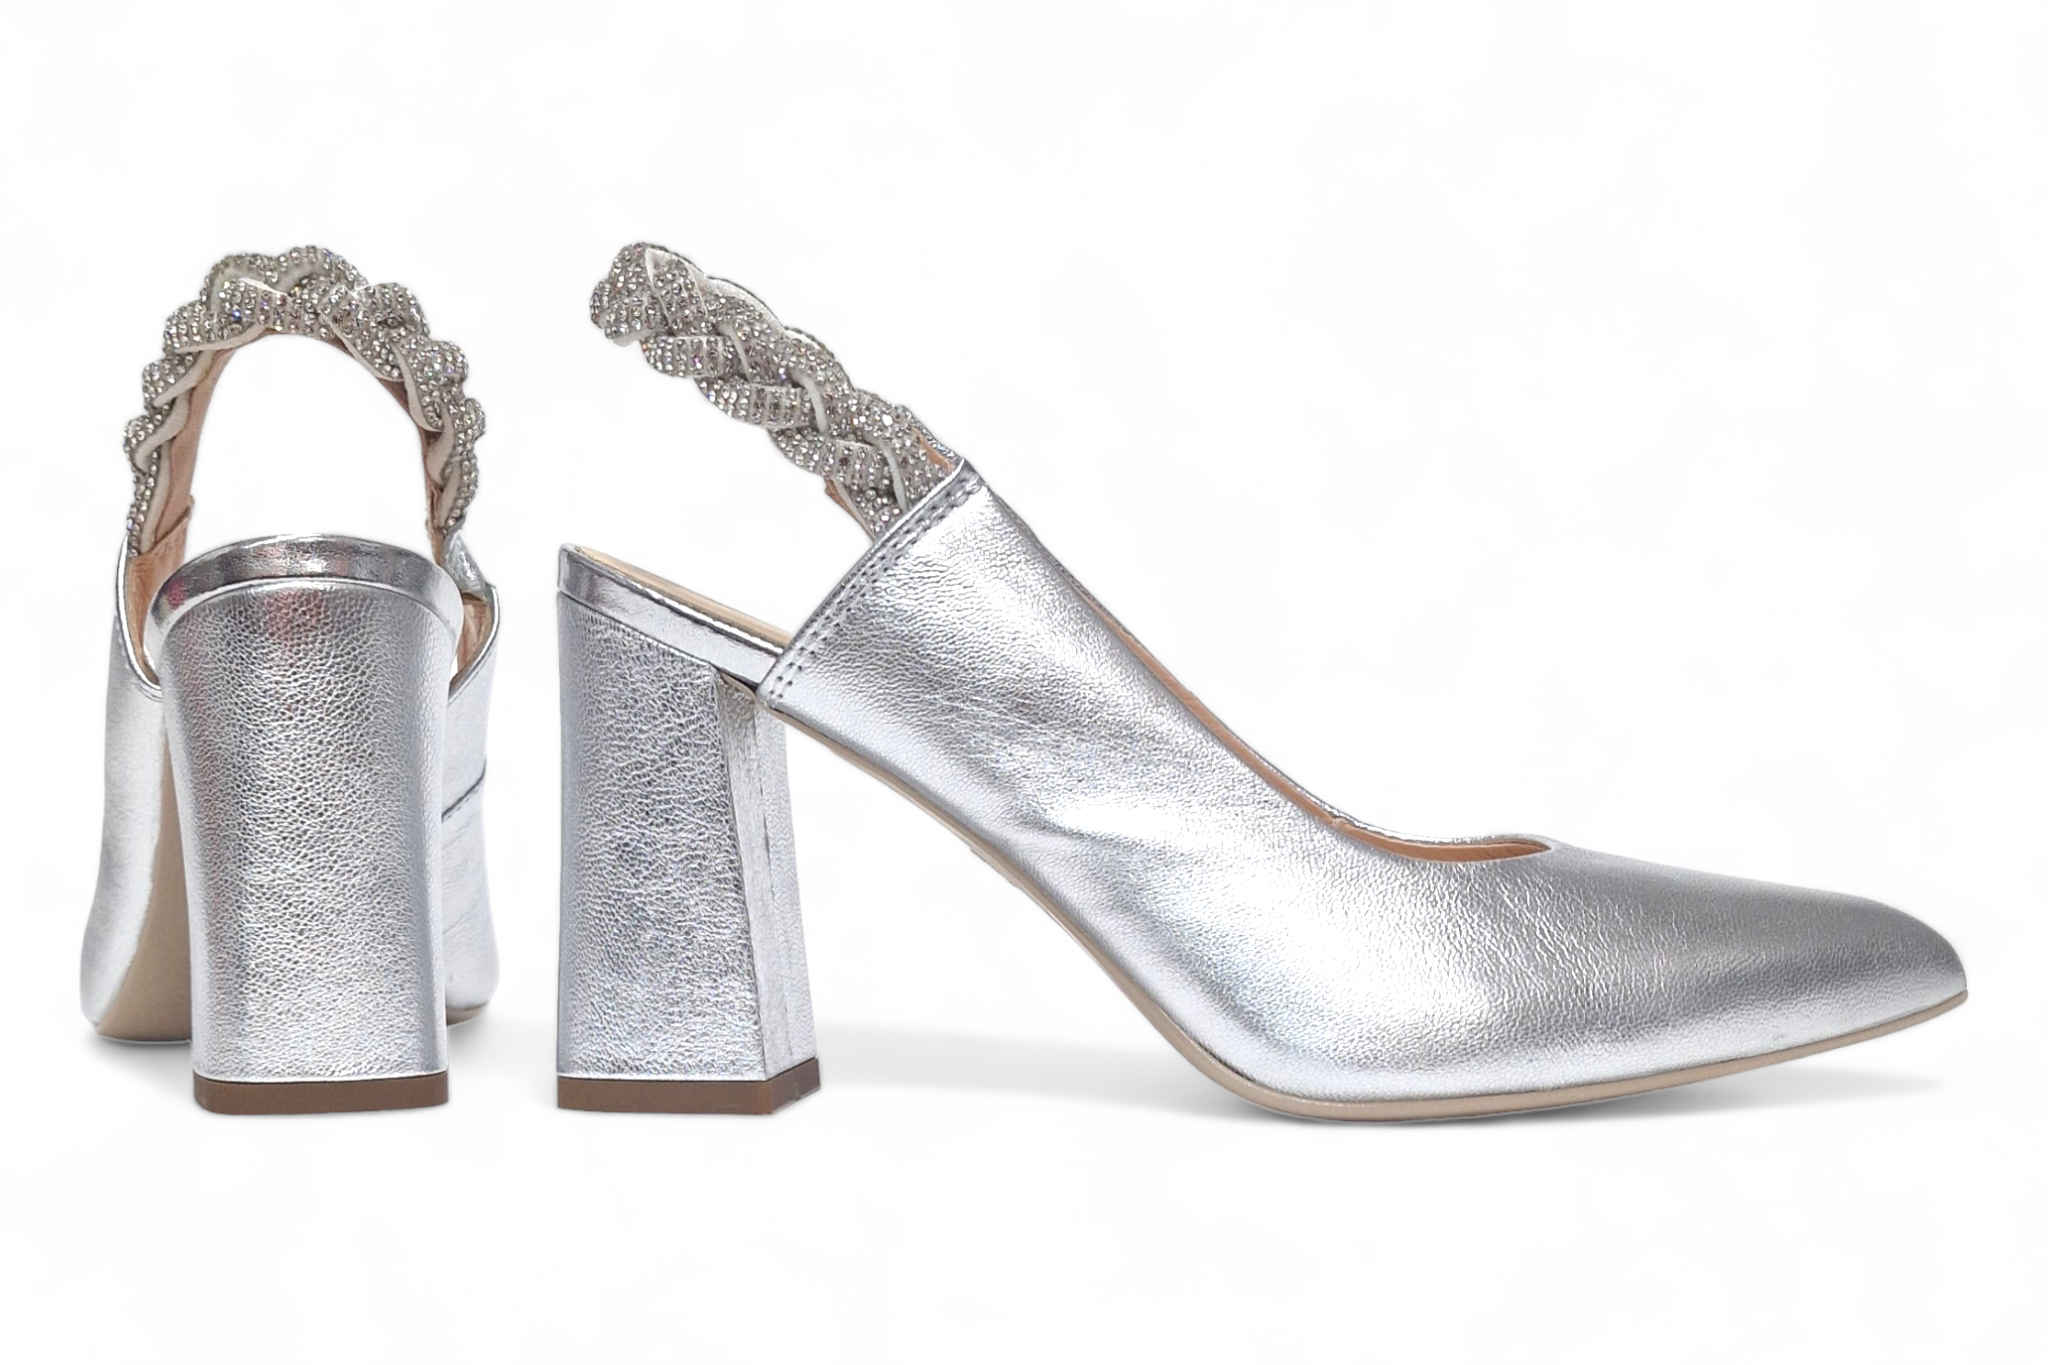 Pantofi dama eleganti piele naturala SALA dec 9954 argintiu